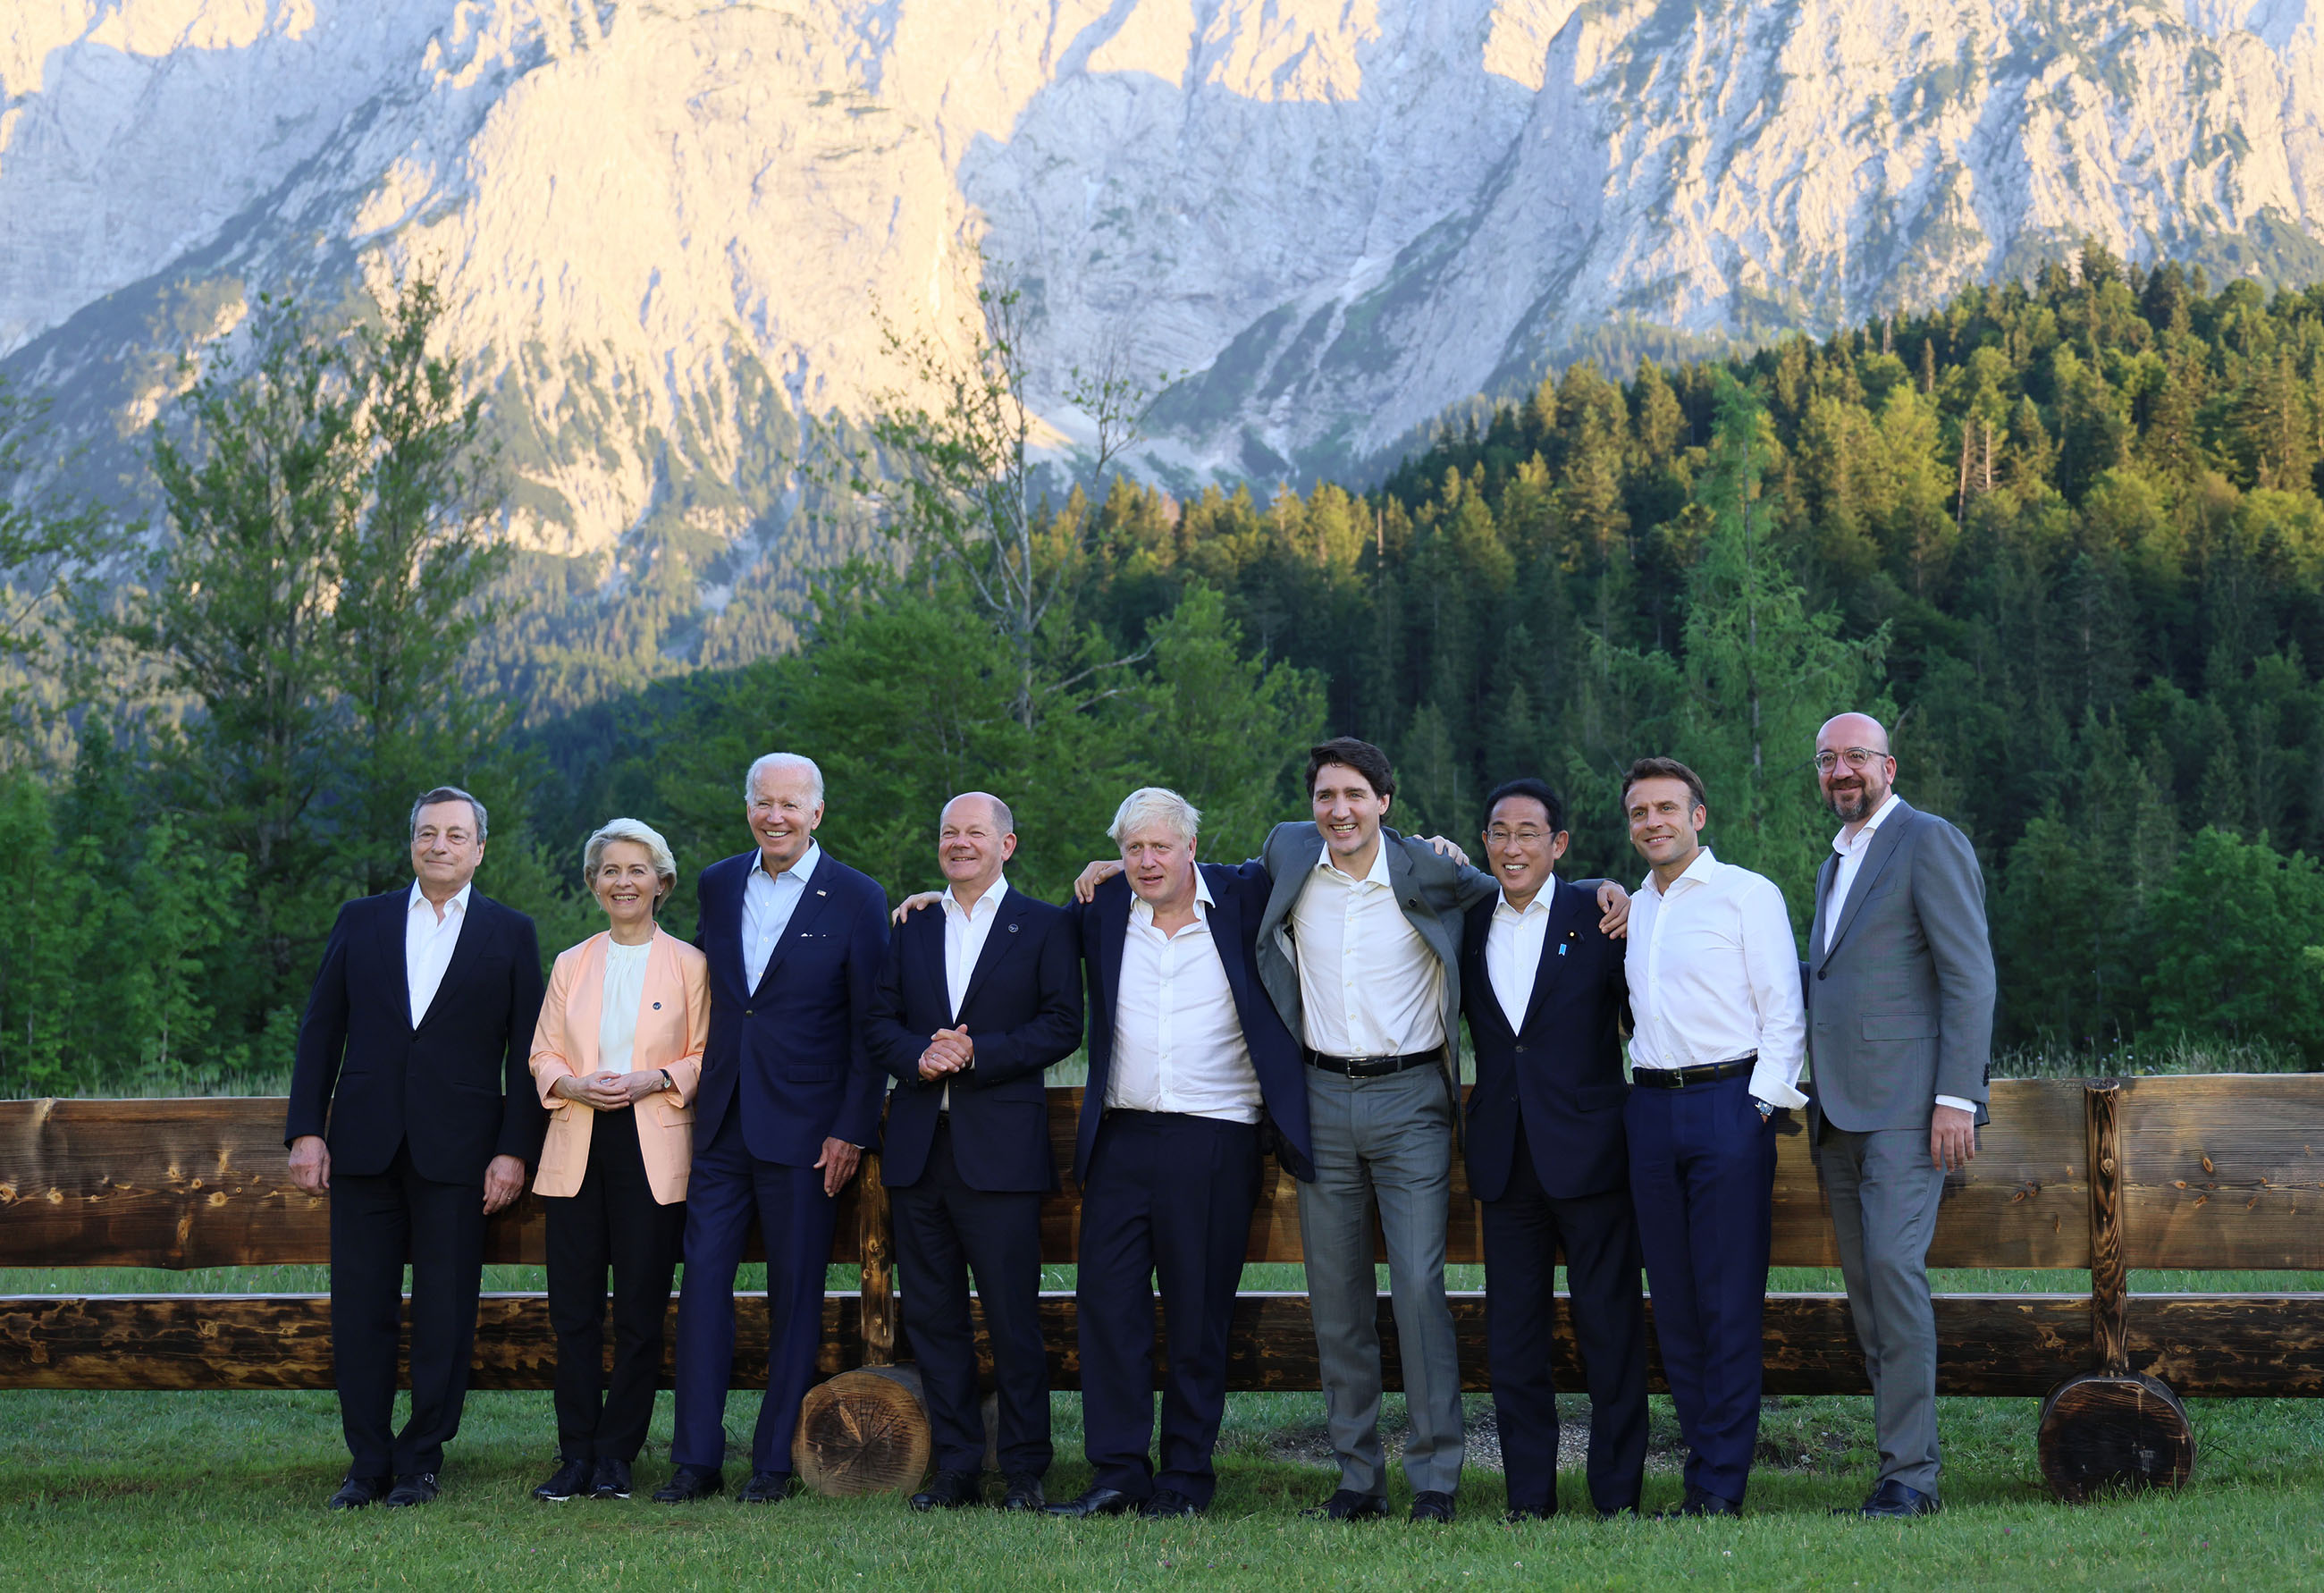 七国集团(G7)埃尔茂峰会及与各国的首脑会谈 -第1天-